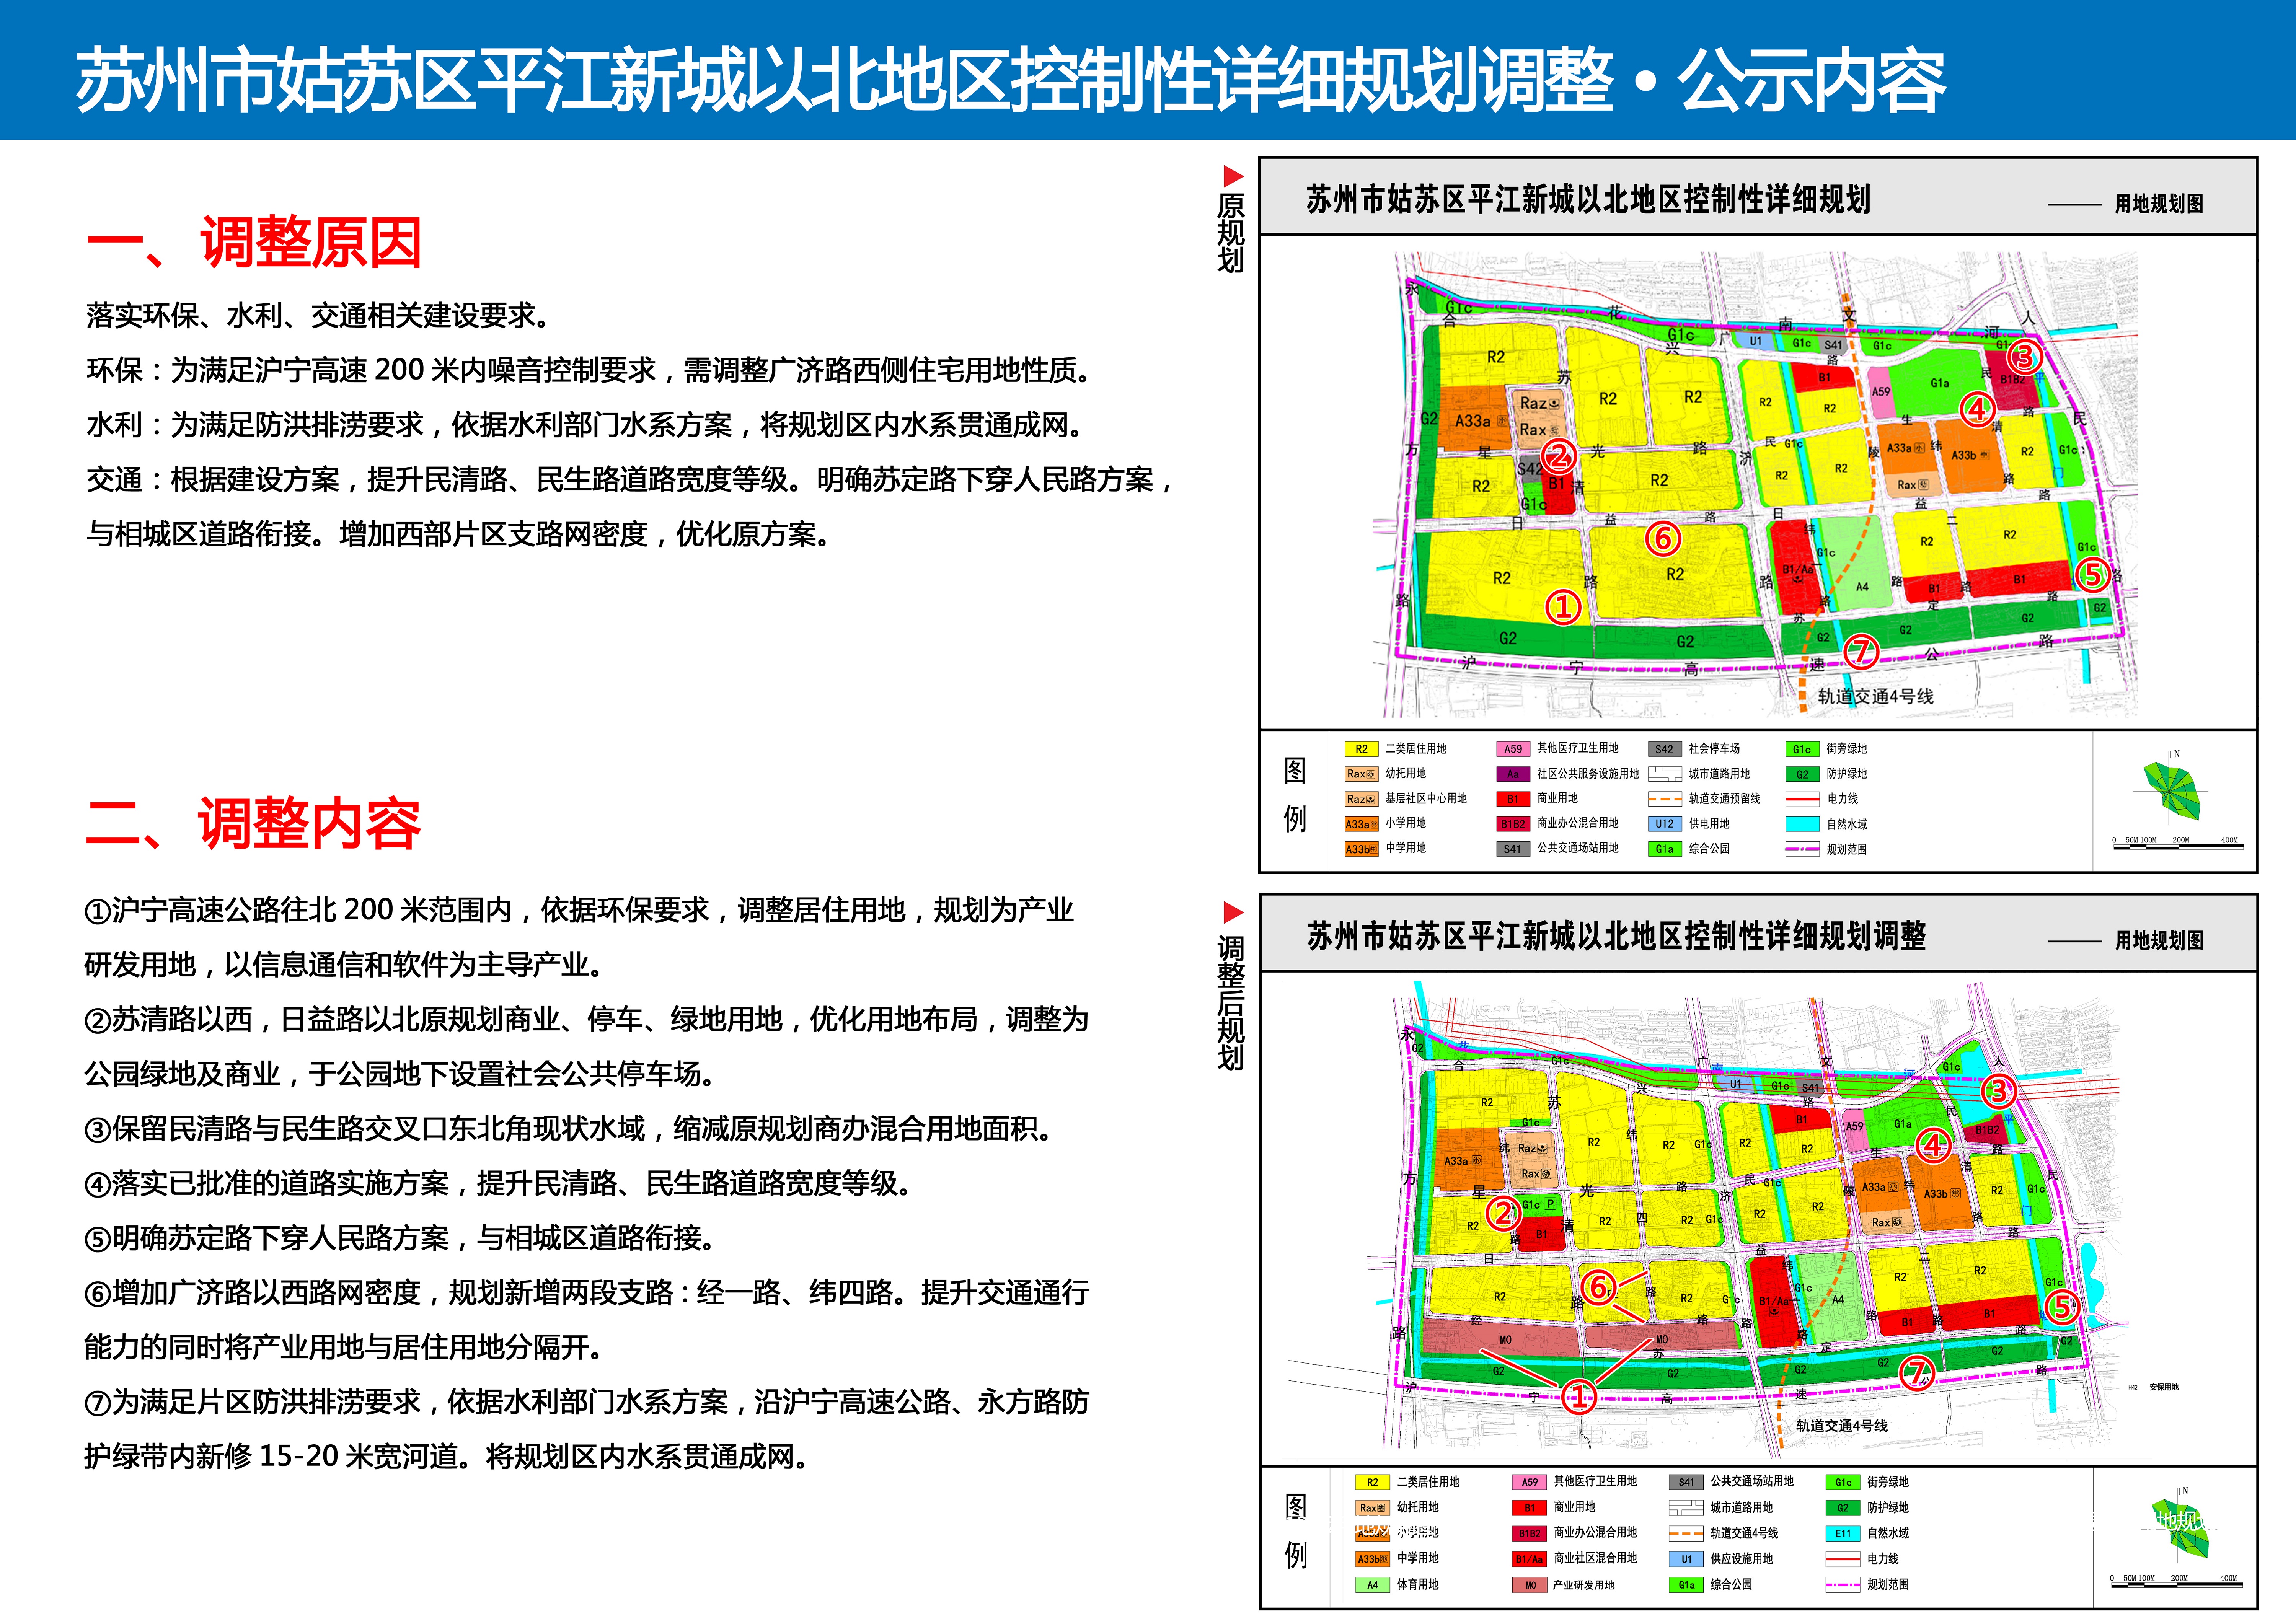 规划调整调整范围:苏州市姑苏区平江新城以北地区位于沪宁高速公路的